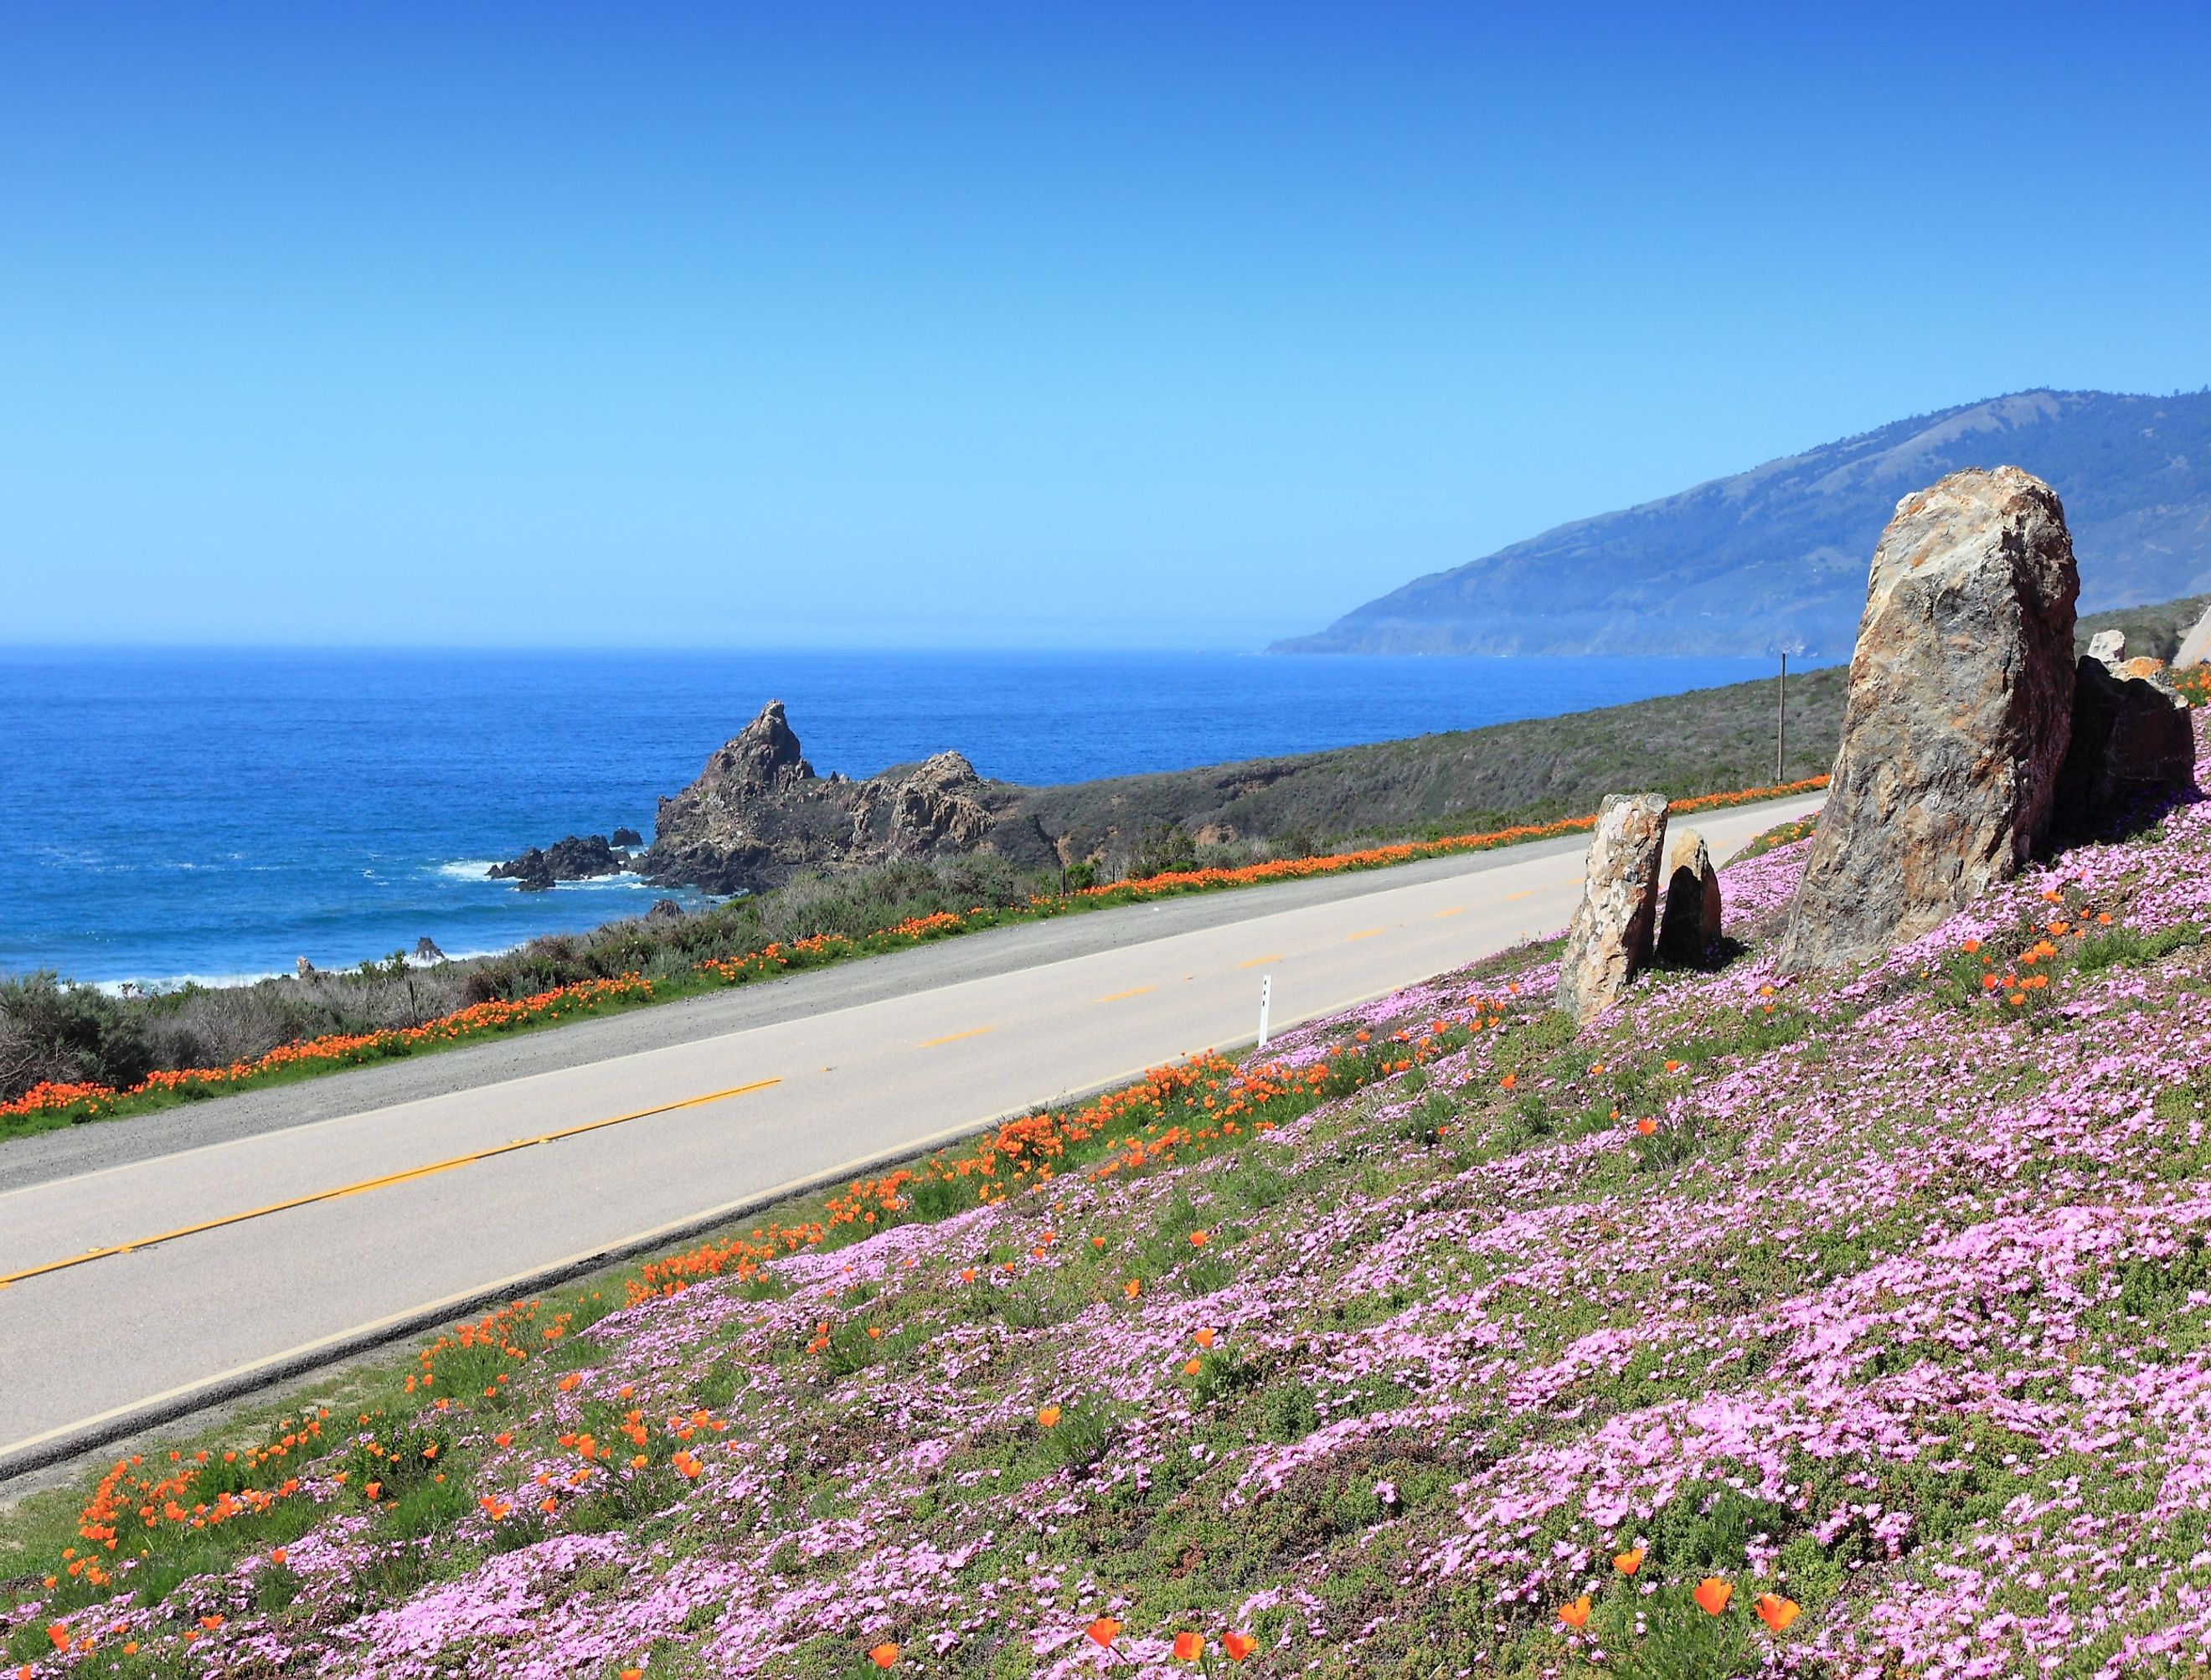 California, United States - Pacific Coast Highway scenic drive. Image credit Tupungato via shutterstock